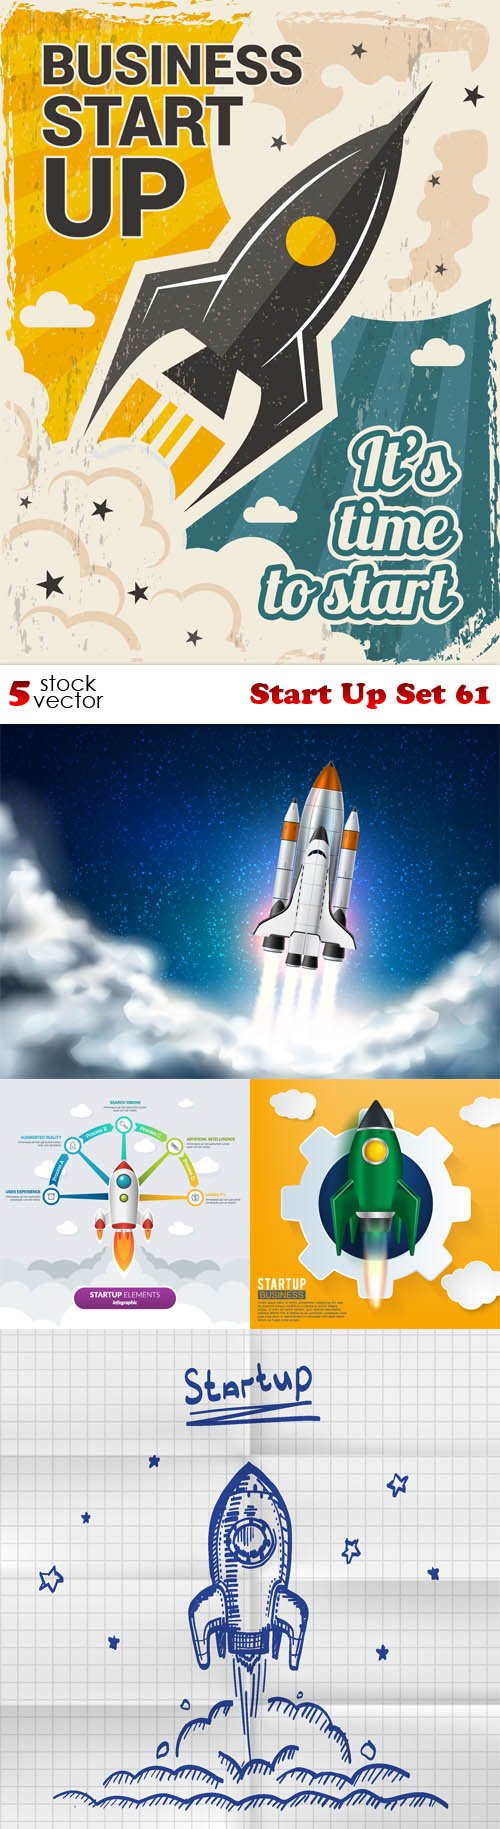 Vectors - Start Up Set 61